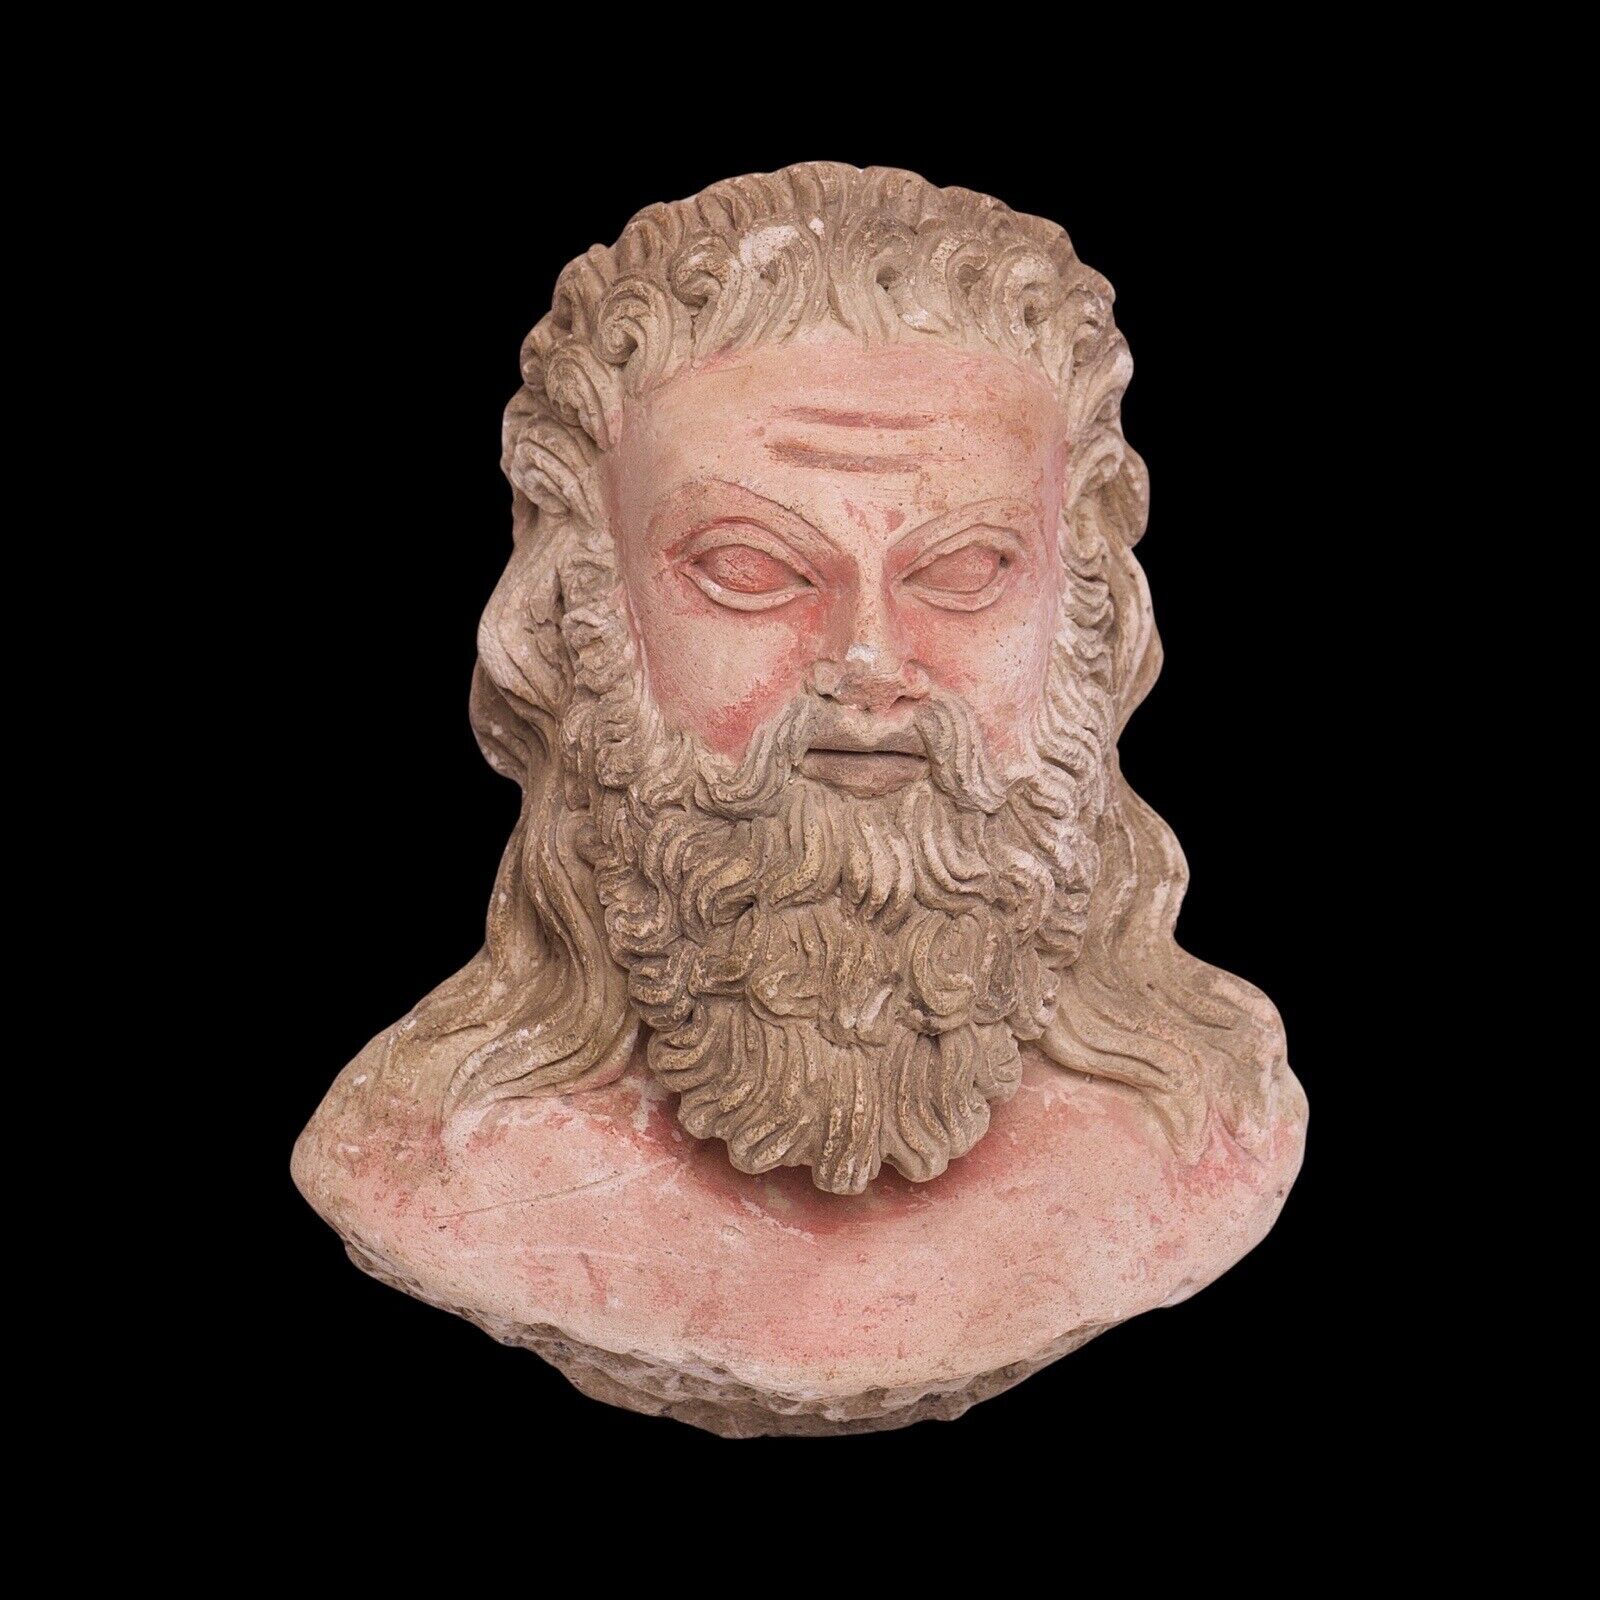 Greek Stucco Bust Sculpture, Greek Art Mythology Sculpture, Artistic Home Accent